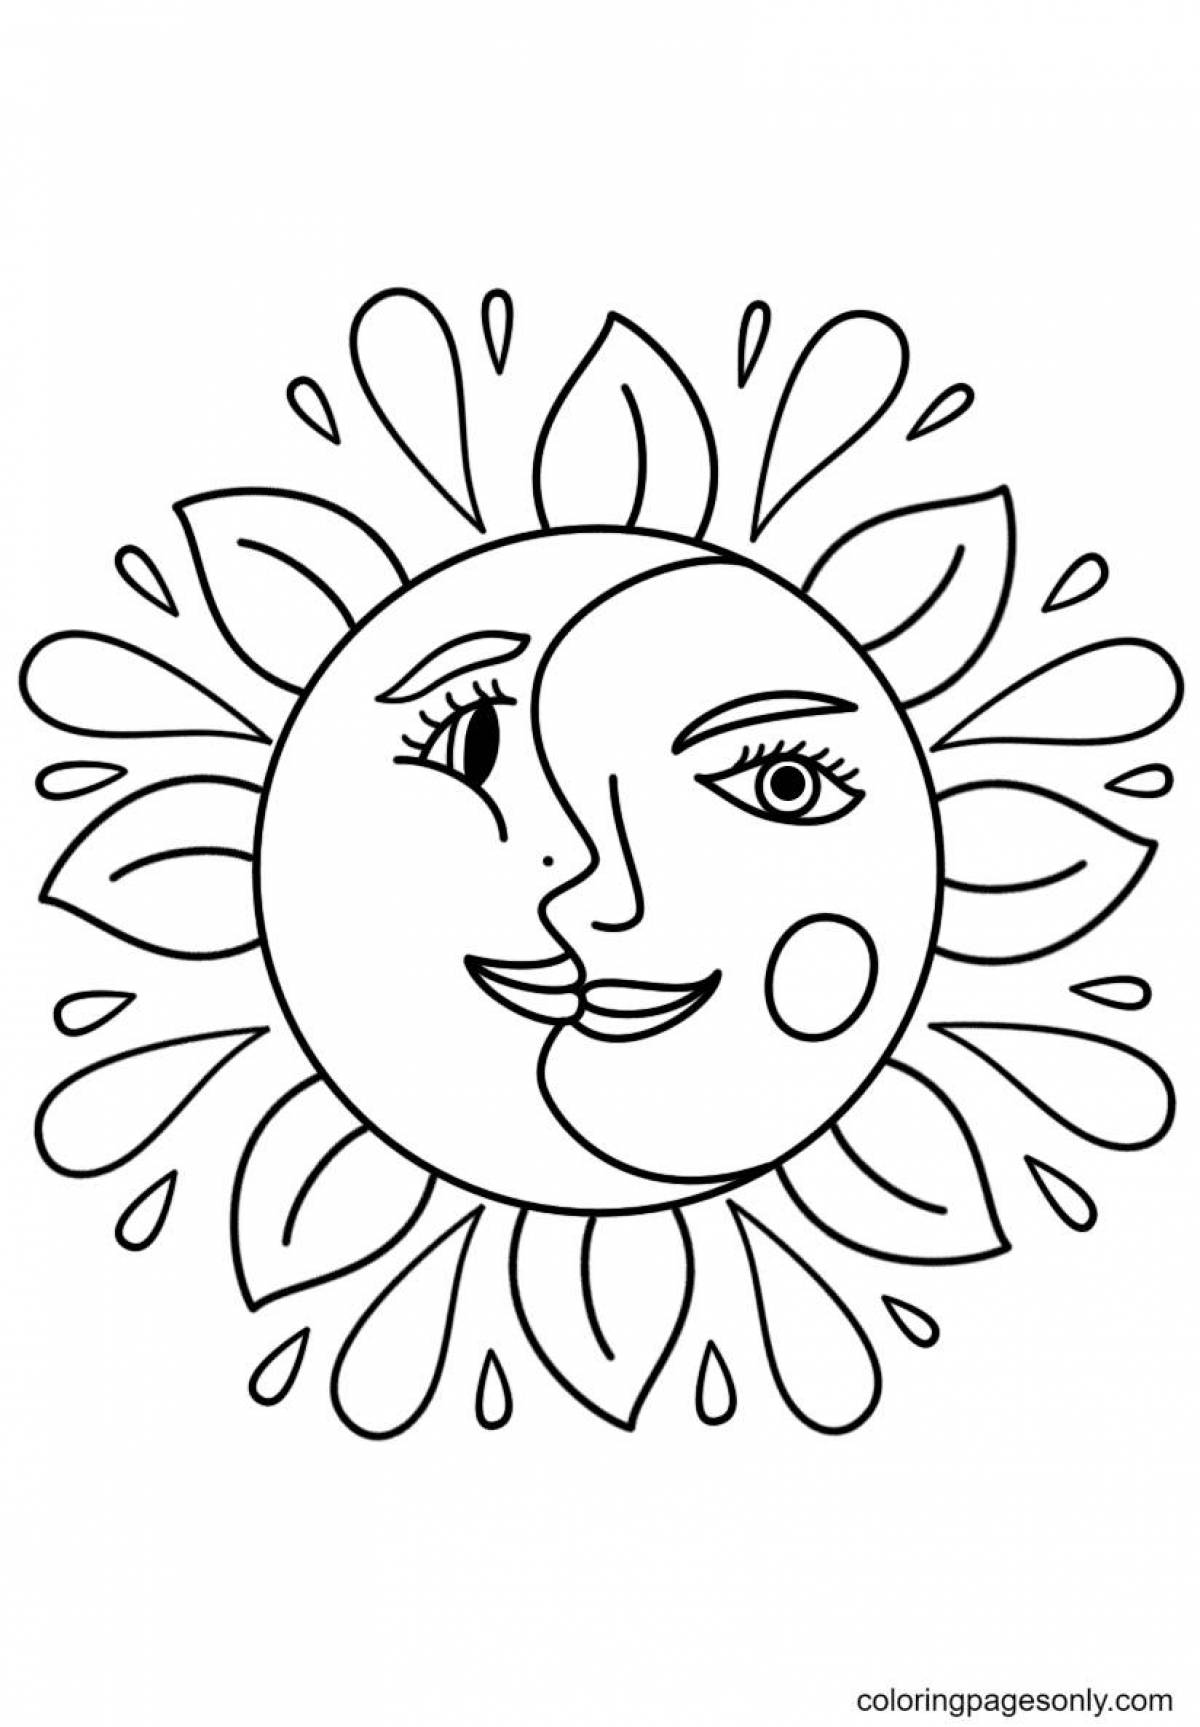 Лицо масленицы раскраска. Солнце раскраска. Солнце раскраска для детей. Солнце раскраска для малышей. Солнце картинка для детей раскраска.